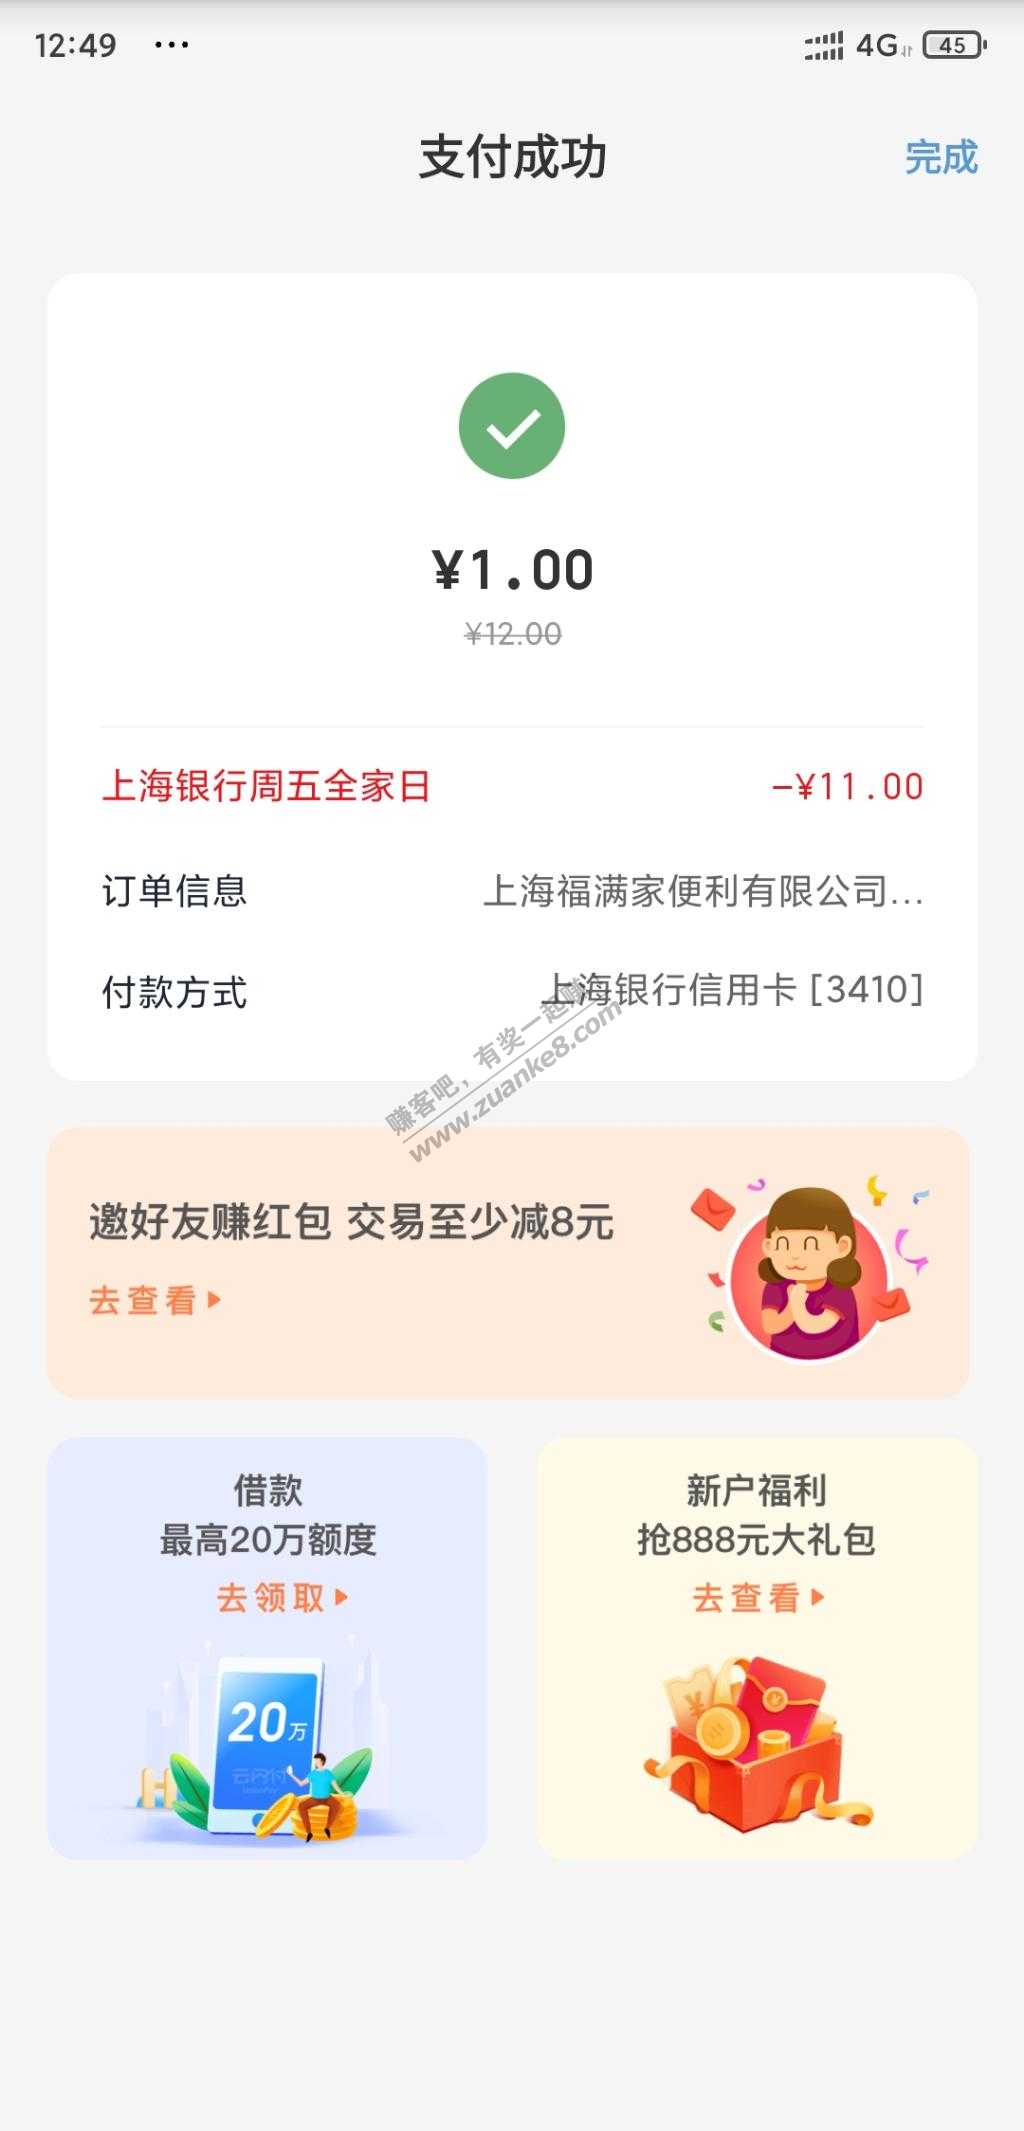 全家咖啡1元-需要上海银行信用卡-惠小助(52huixz.com)